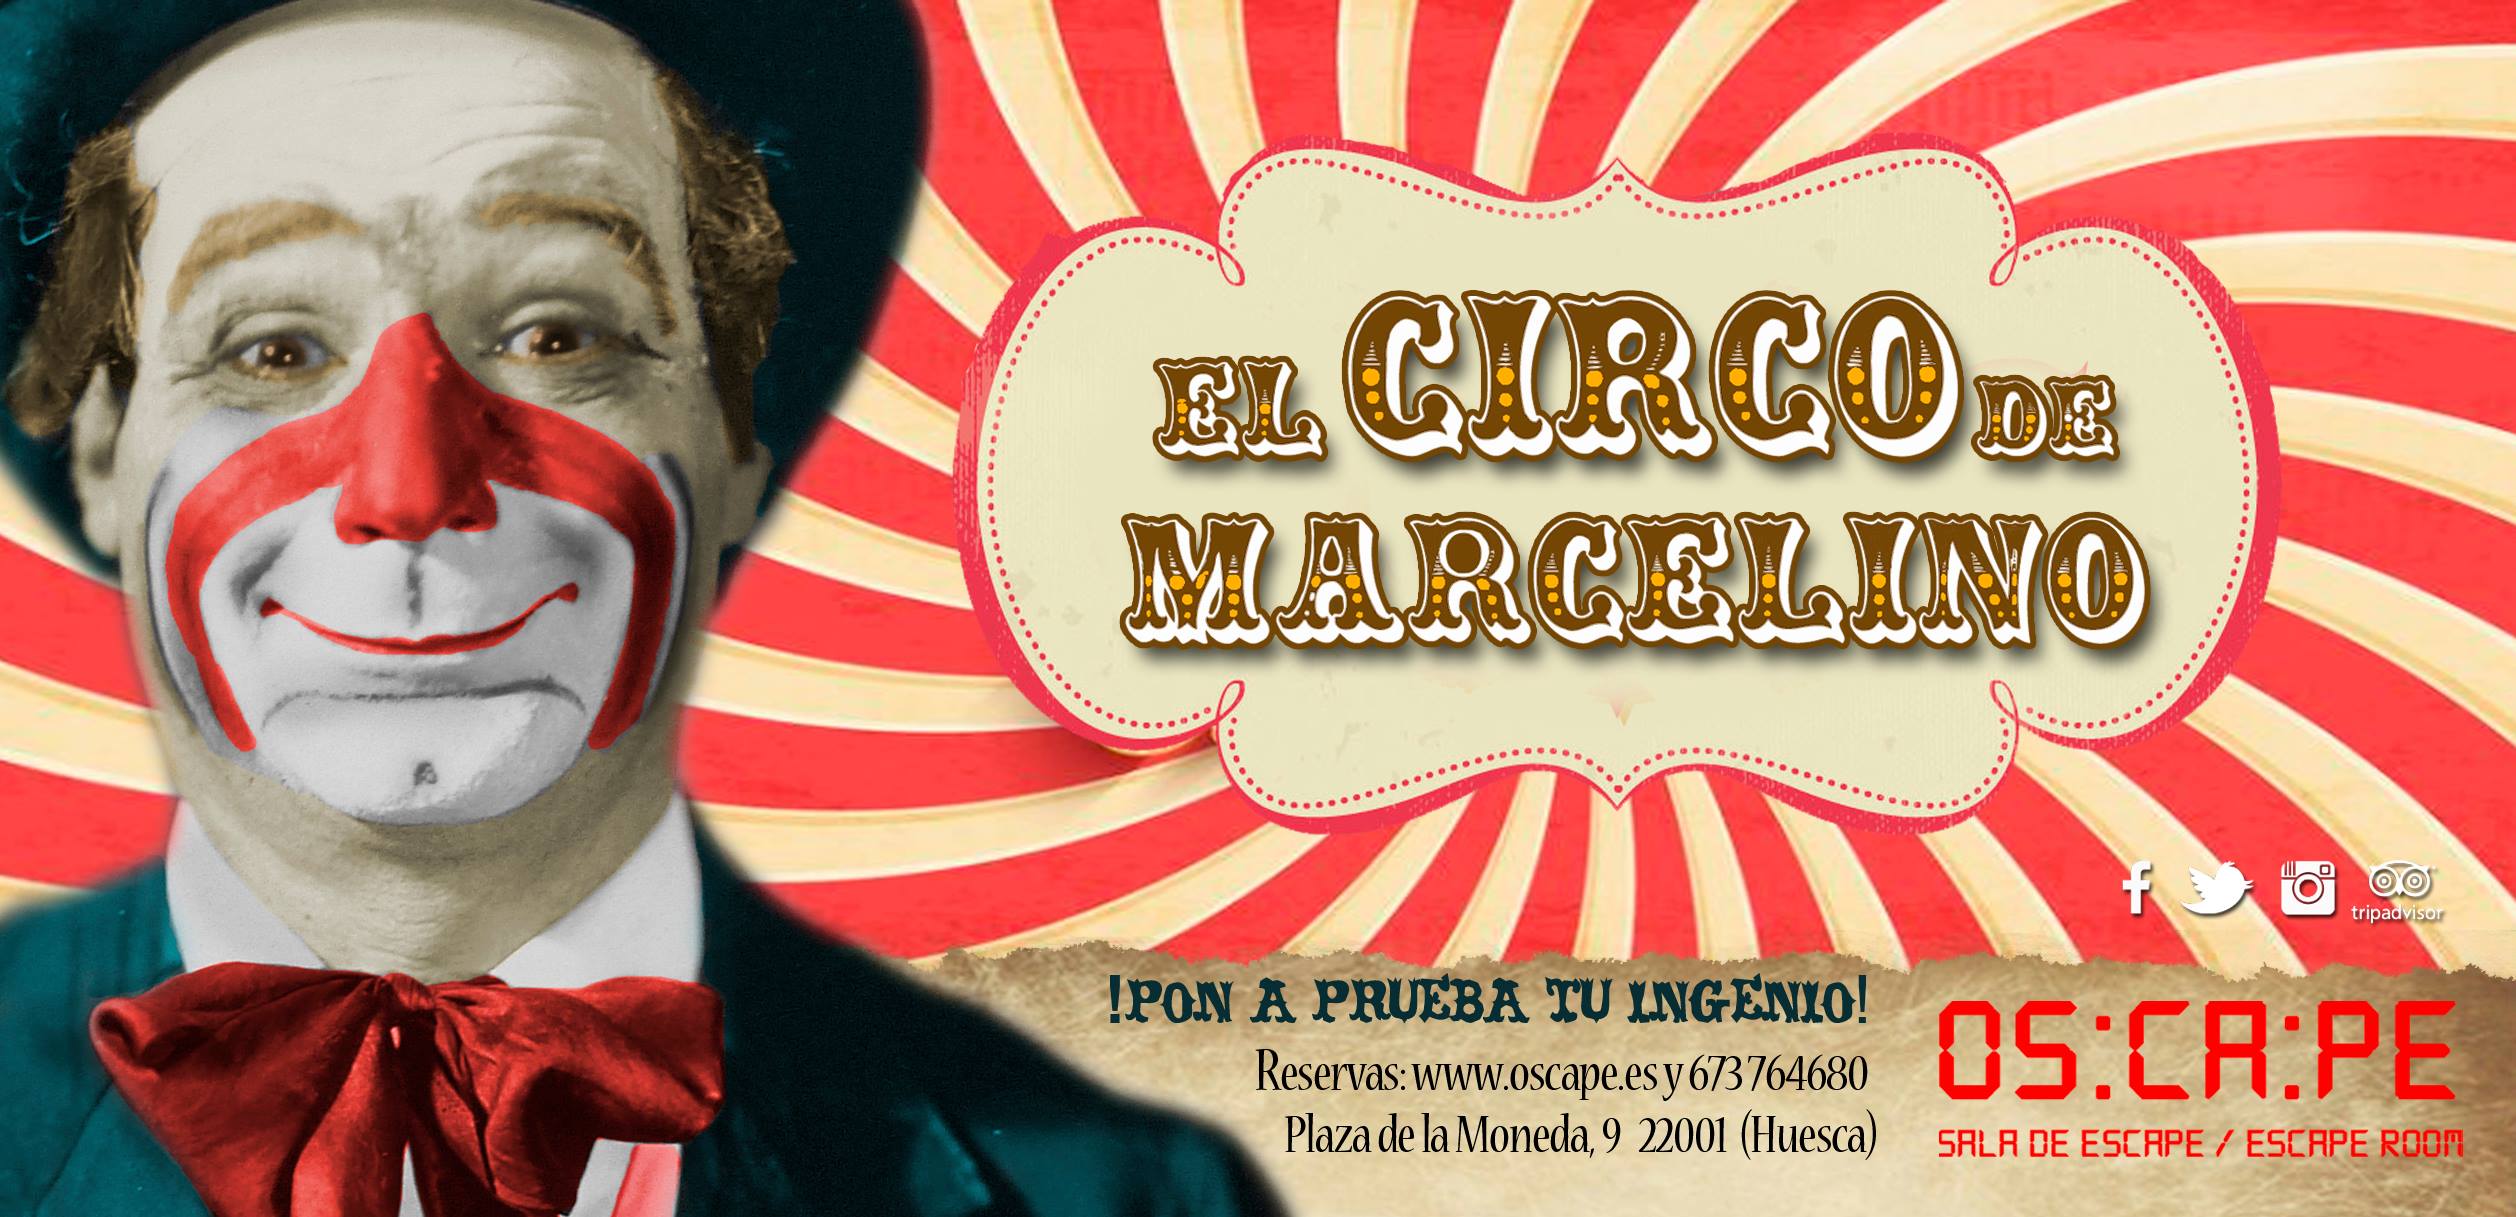 El circo de Marcelino